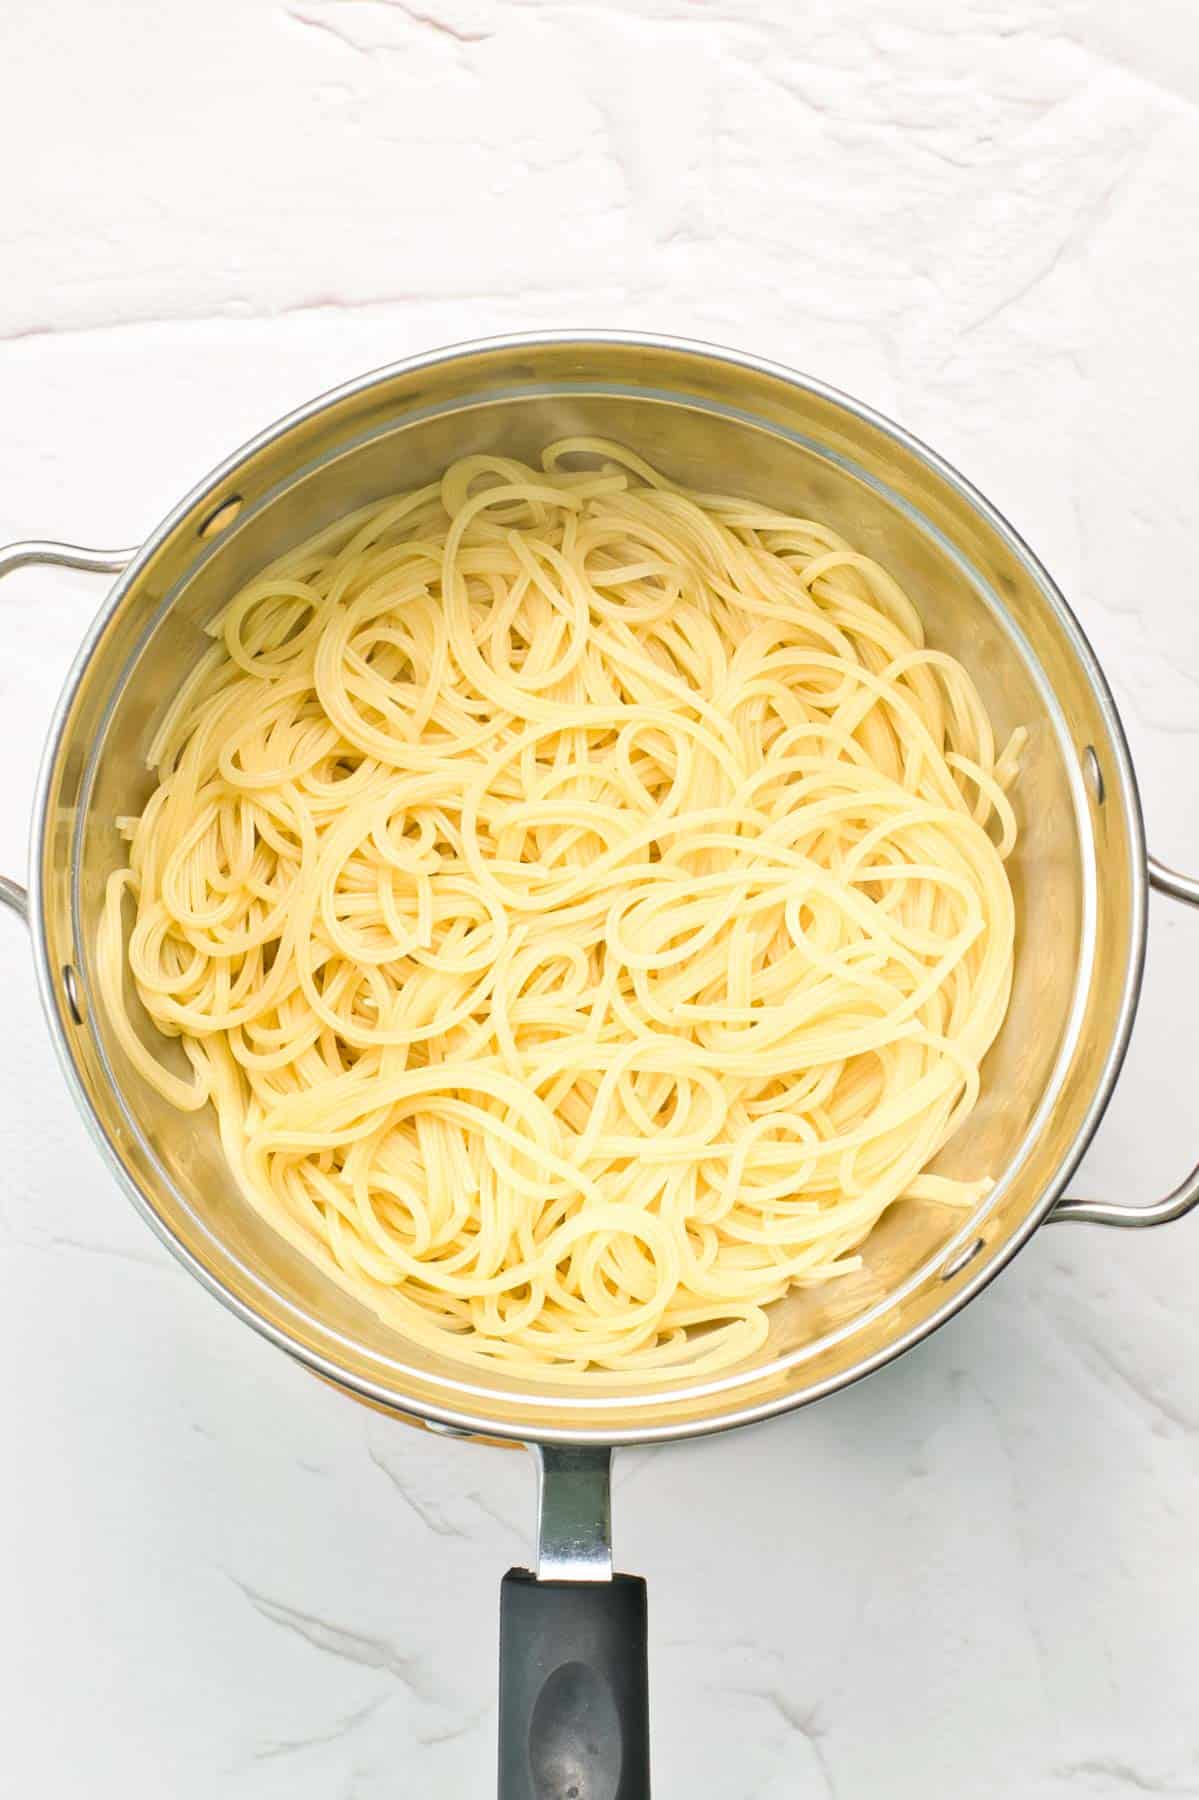 noodles in pan